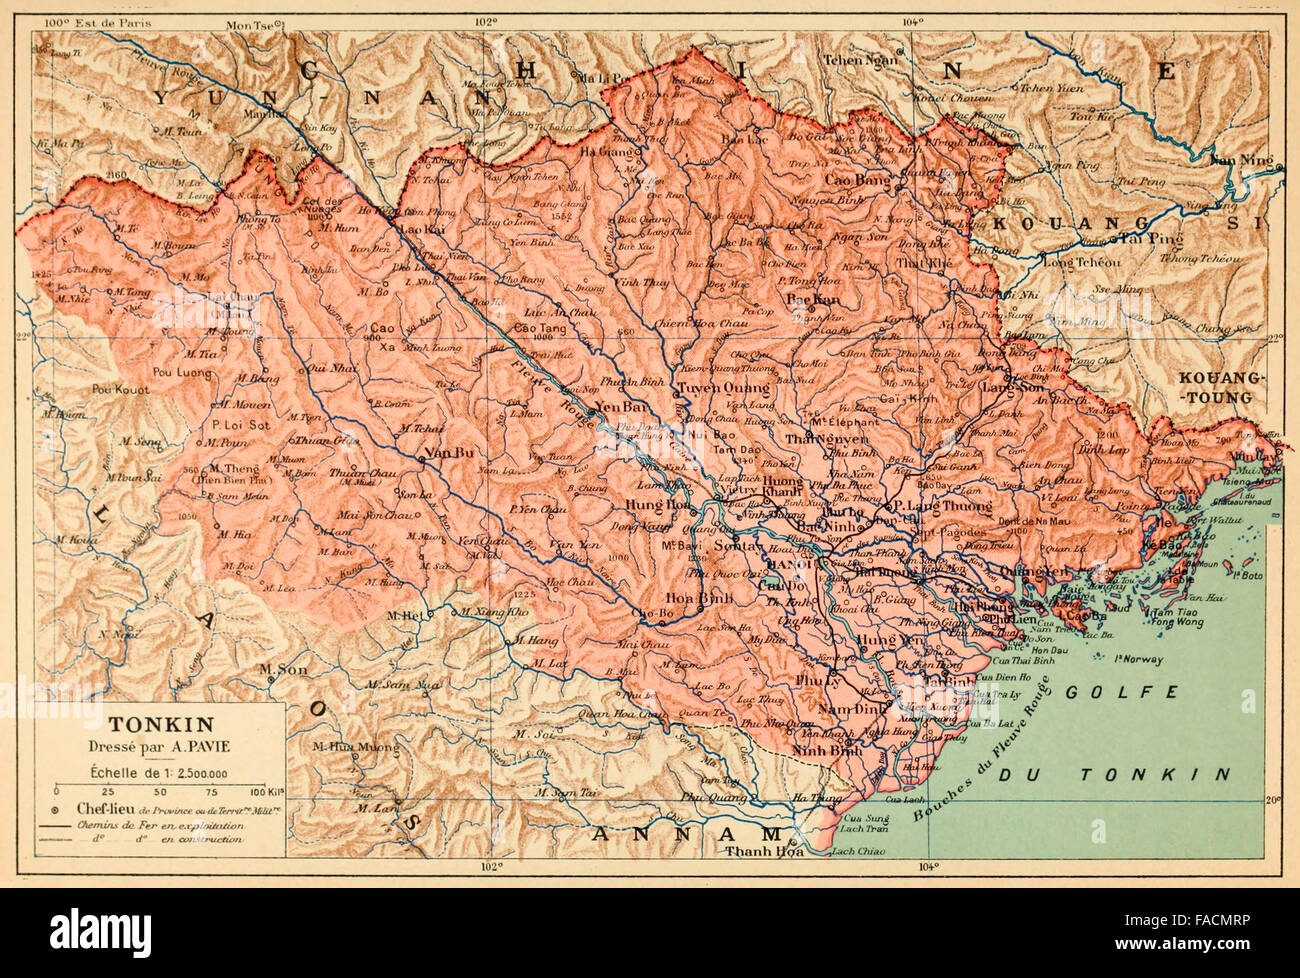 Karte der französischen Kolonie von Tonkin, Französisch-Indochina, um 1890 - Tonkin war der nördlichste Teil von Vietnam und Hanoi Stockfoto